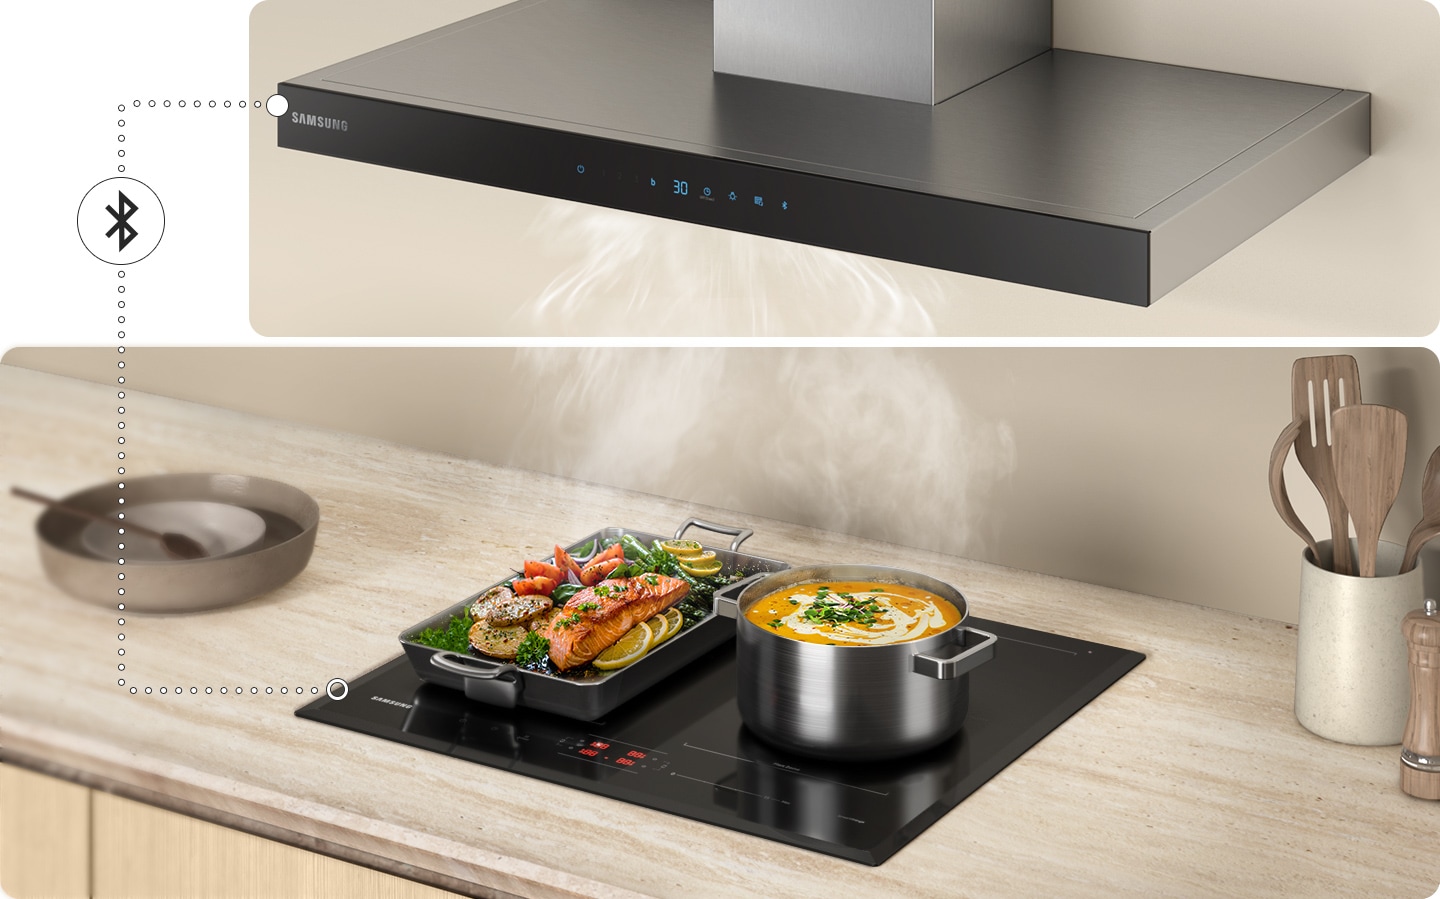 Možete istovremeno upravljati napom i pločom za kuhanje tako da ih povežete putem Bluetootha.